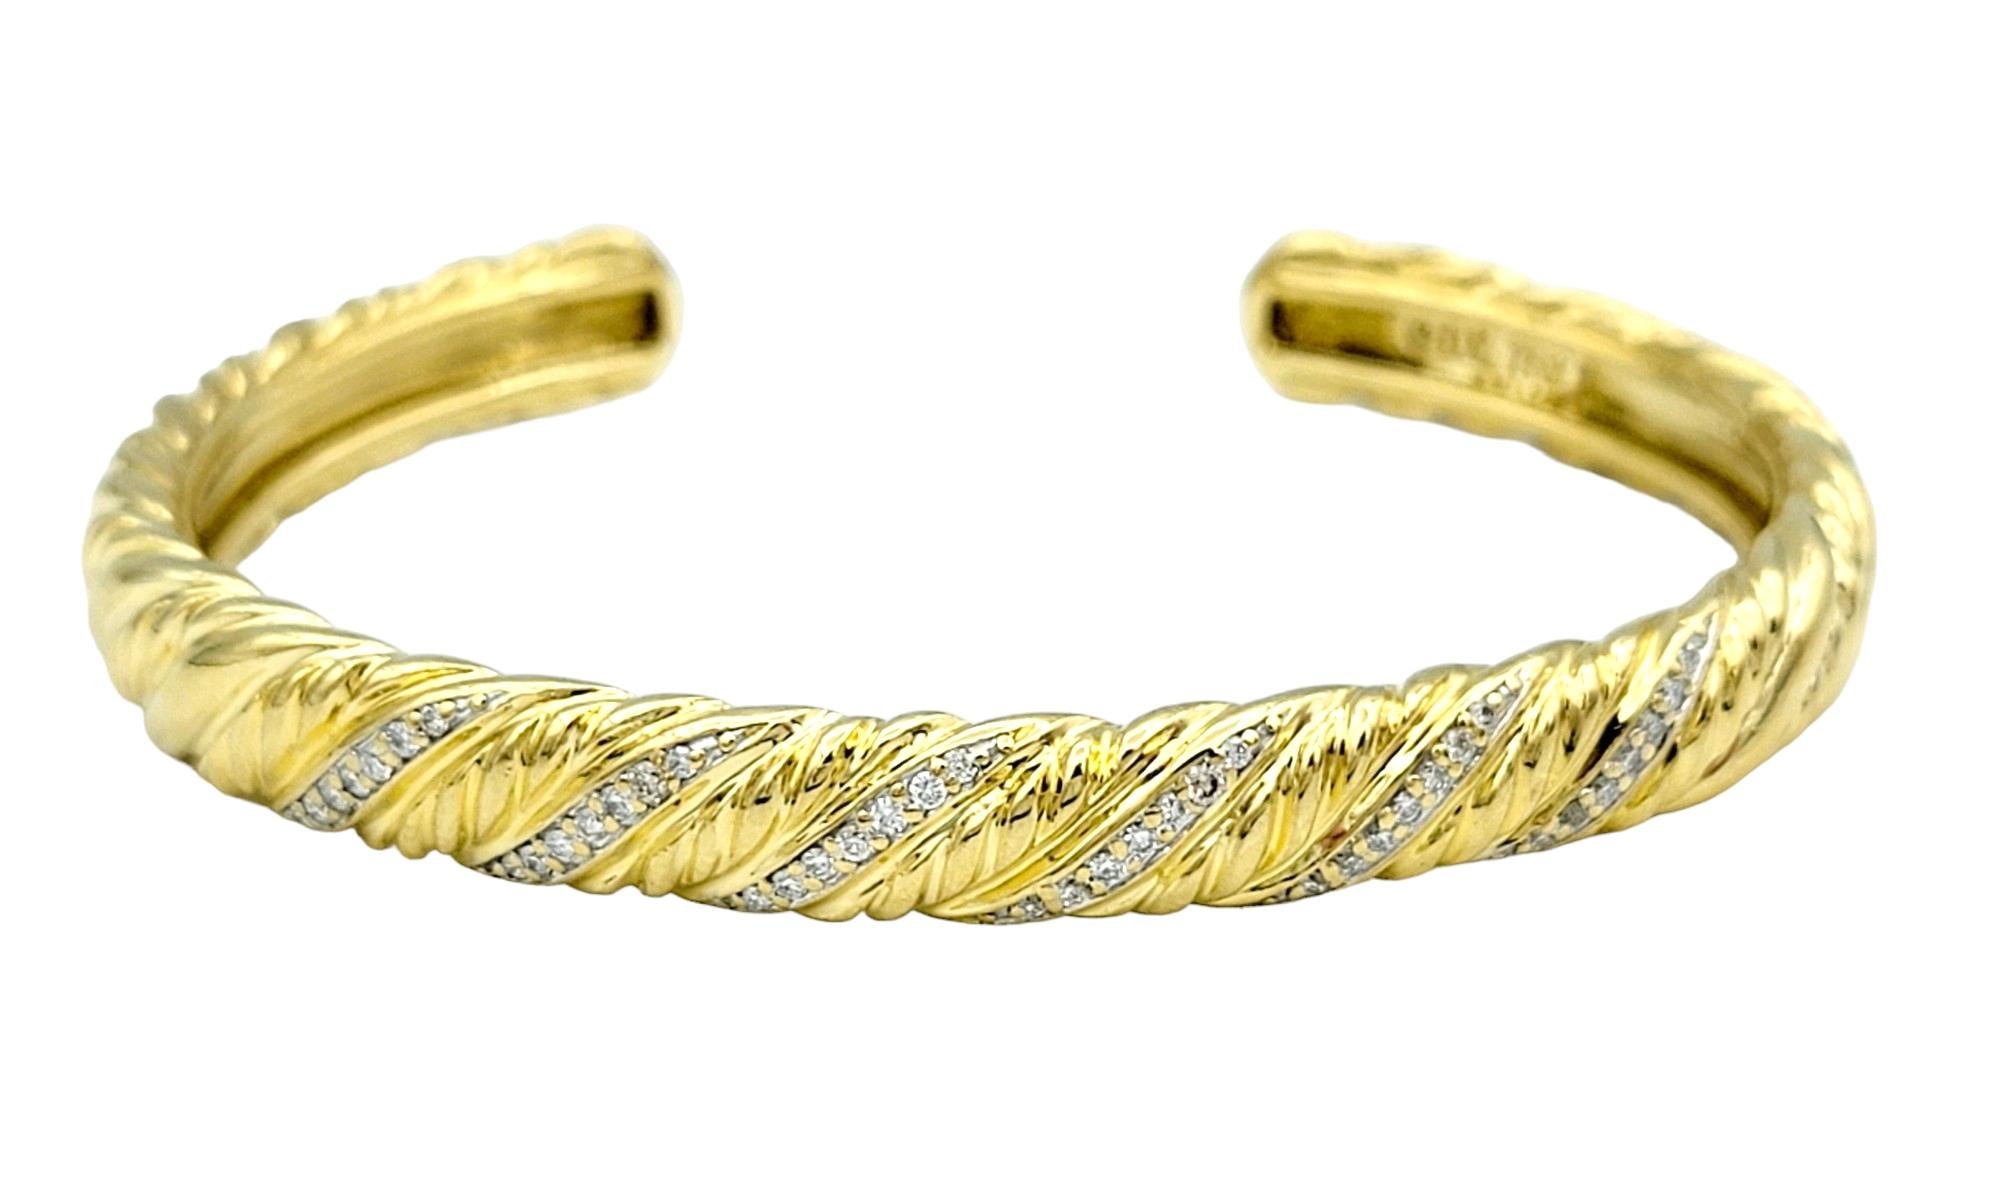 Ce superbe bracelet à diamants David Yurman, réalisé en or jaune 18 carats, est un témoignage éclatant du style caractéristique de la marque et de son savoir-faire exquis. Doté d'un design torsadé, le bracelet dégage une impression de beauté